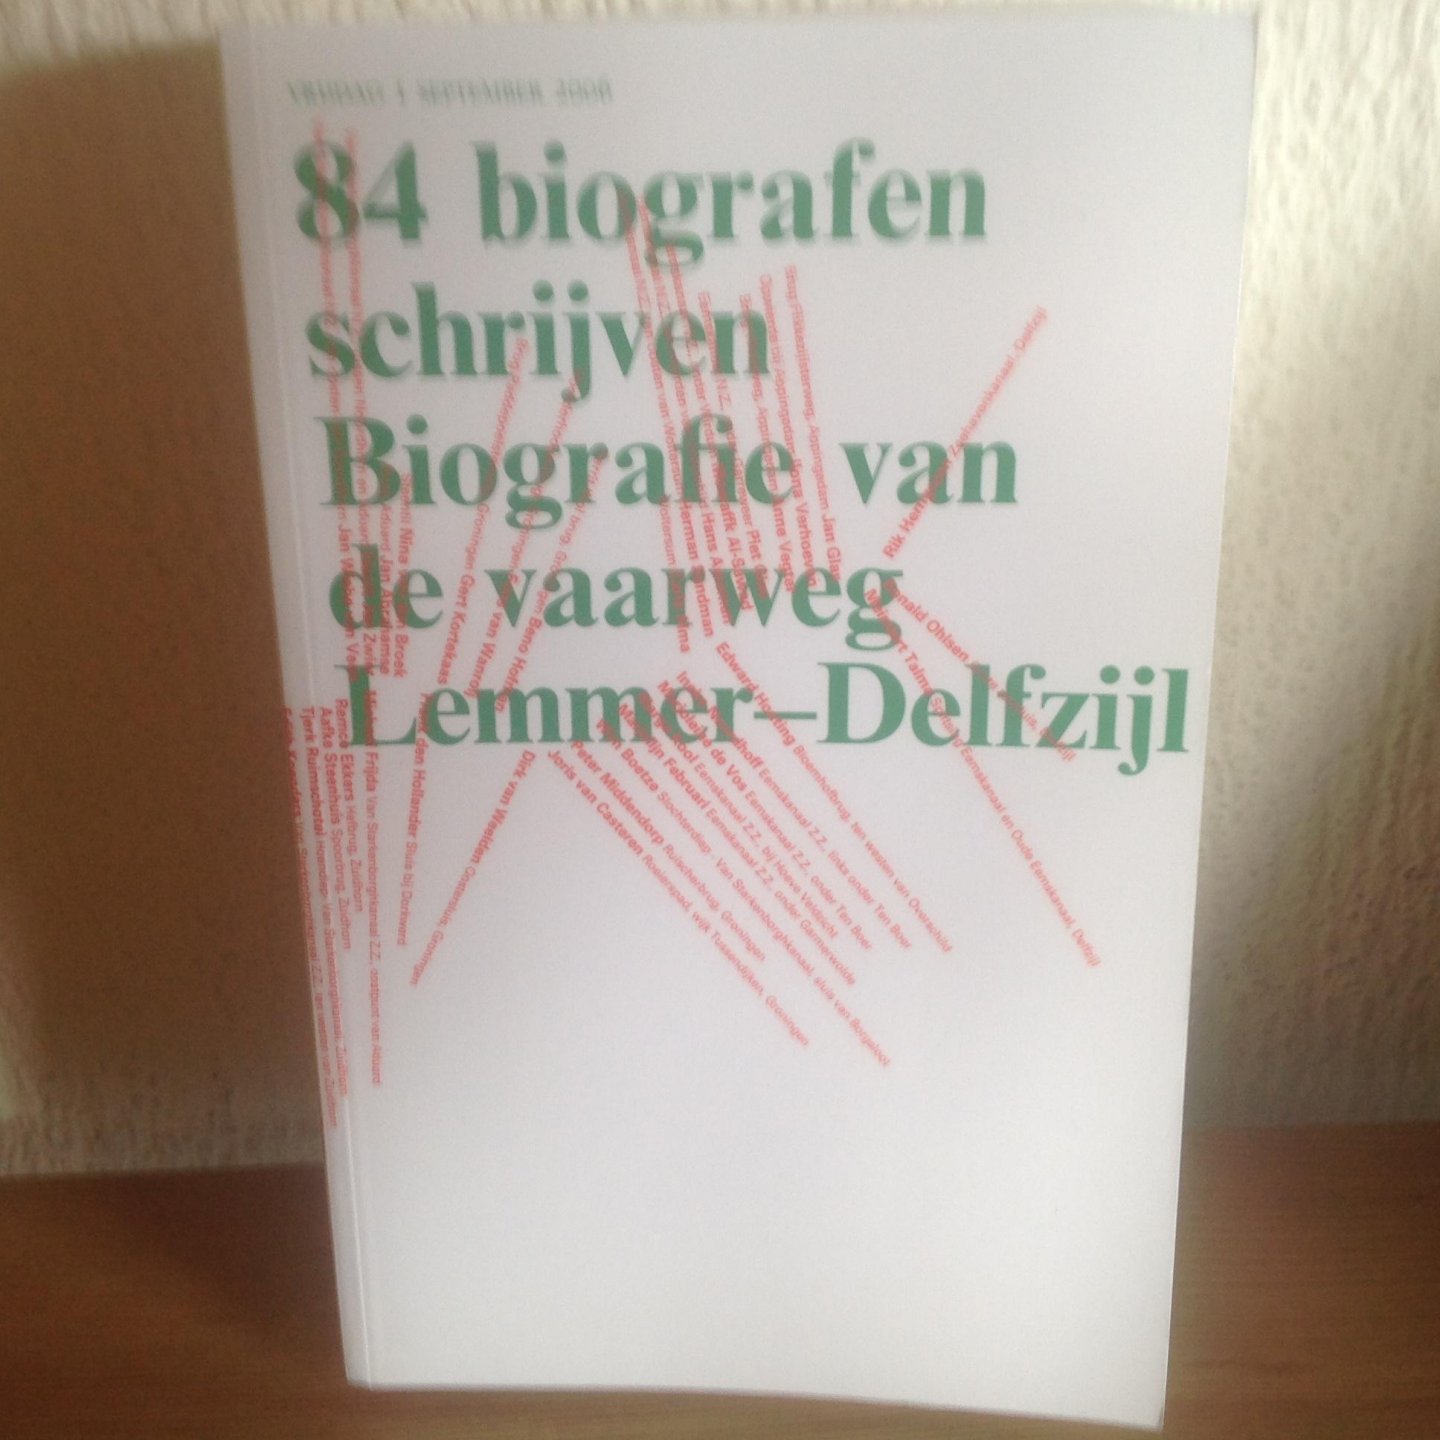 Dam, V. van, Langenberg, S. - 84 biografen schrijven Biografie van de vaarweg Lemmer-Delfzijl